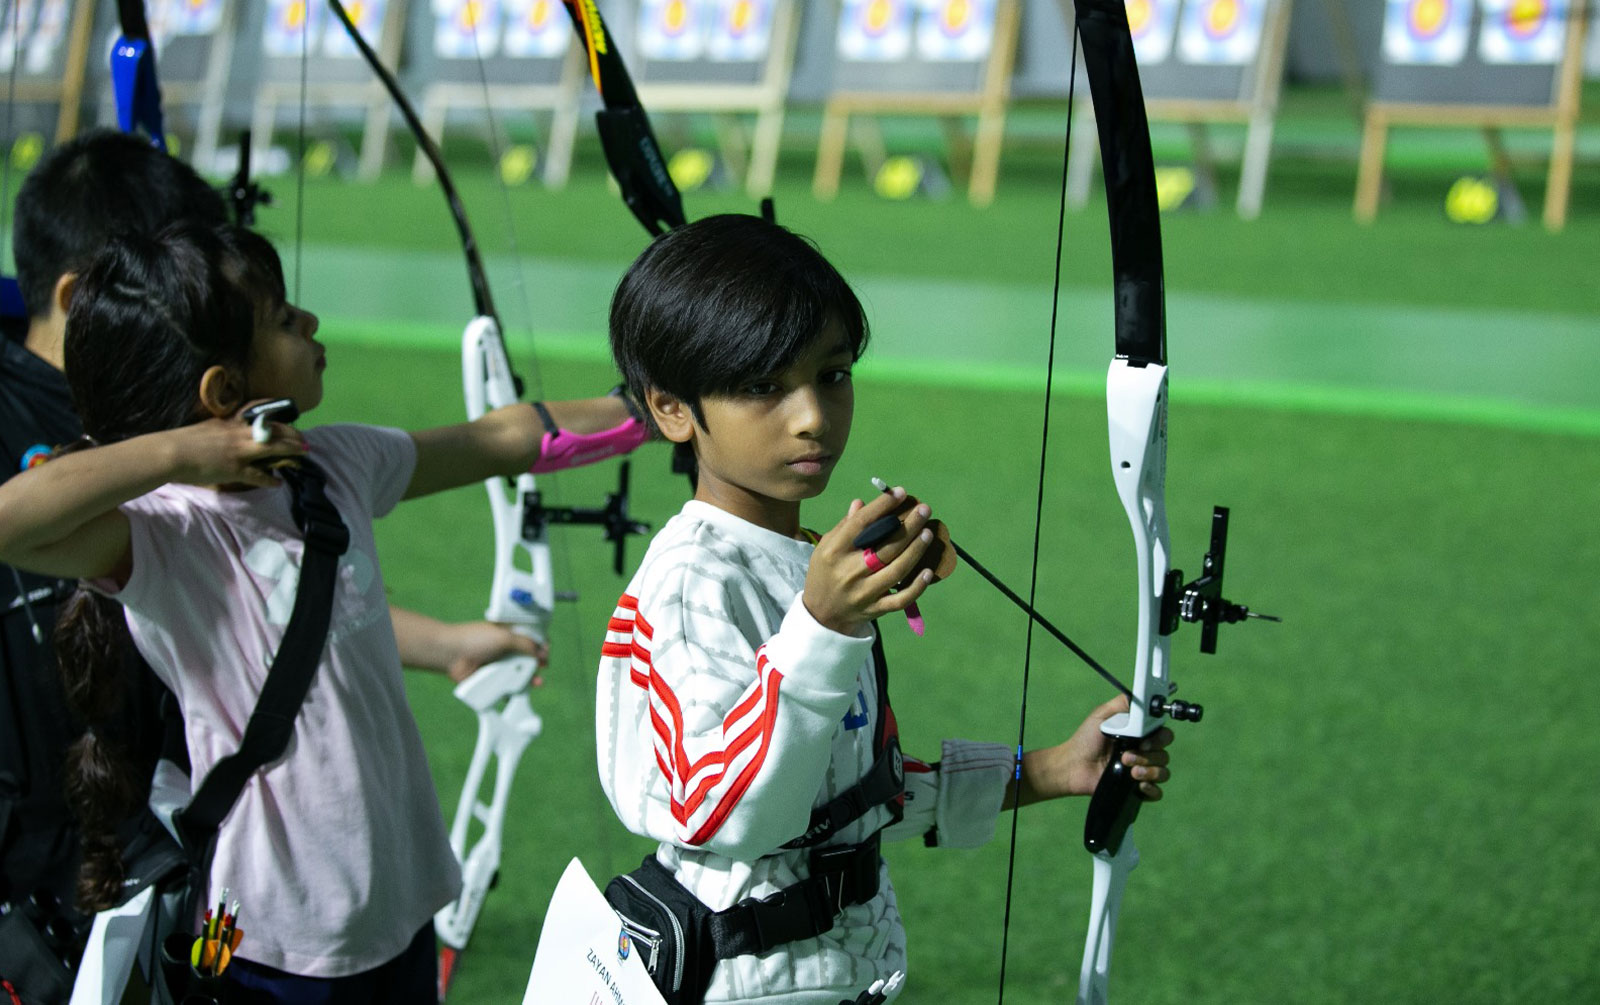 x-ten-archery-qatar-8